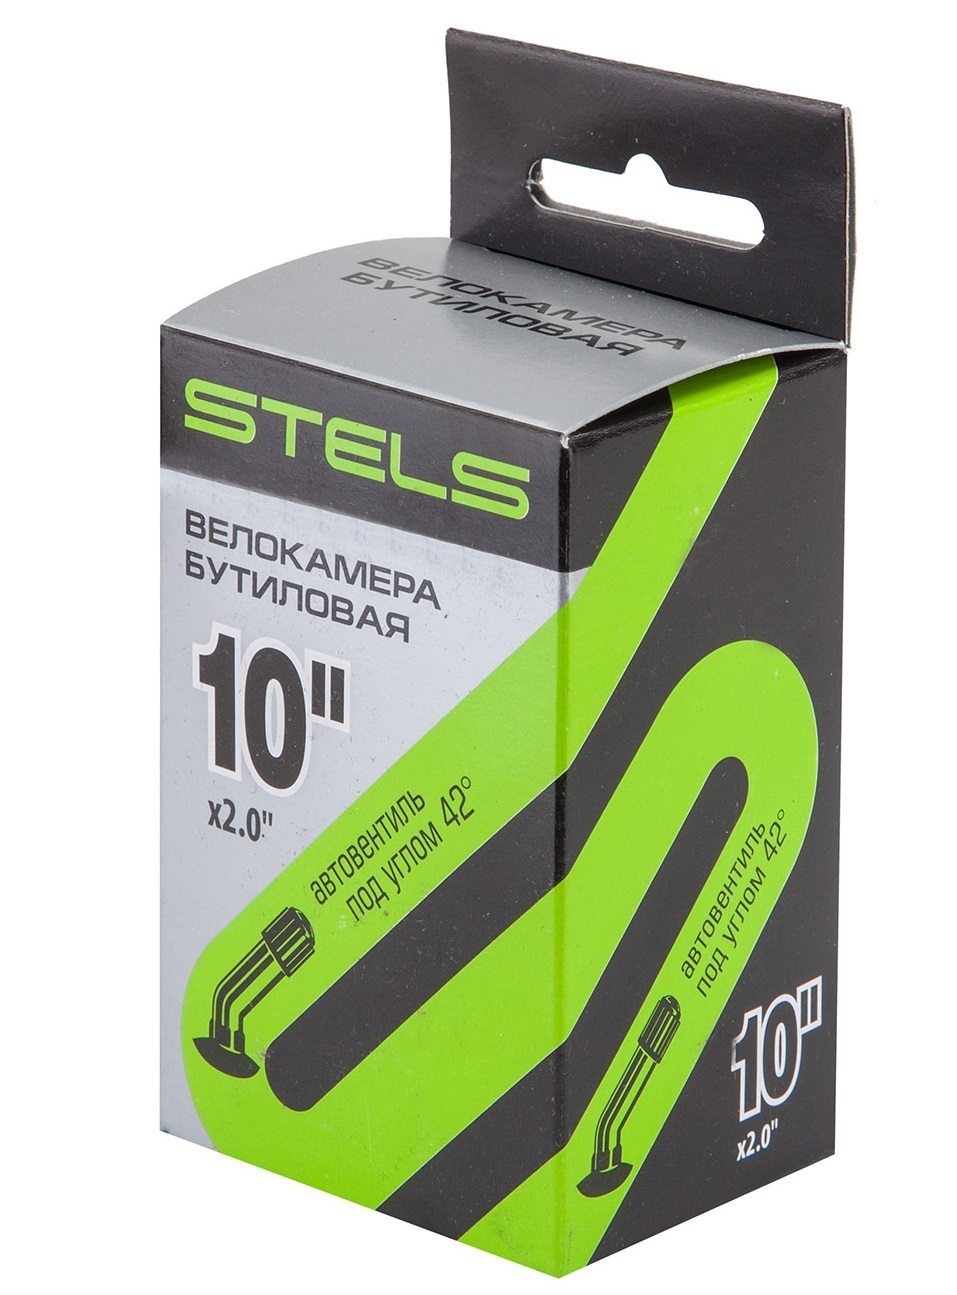 Велокамера STELS 10" x 2.0 гнутый автовентиль, в инд. упаковке